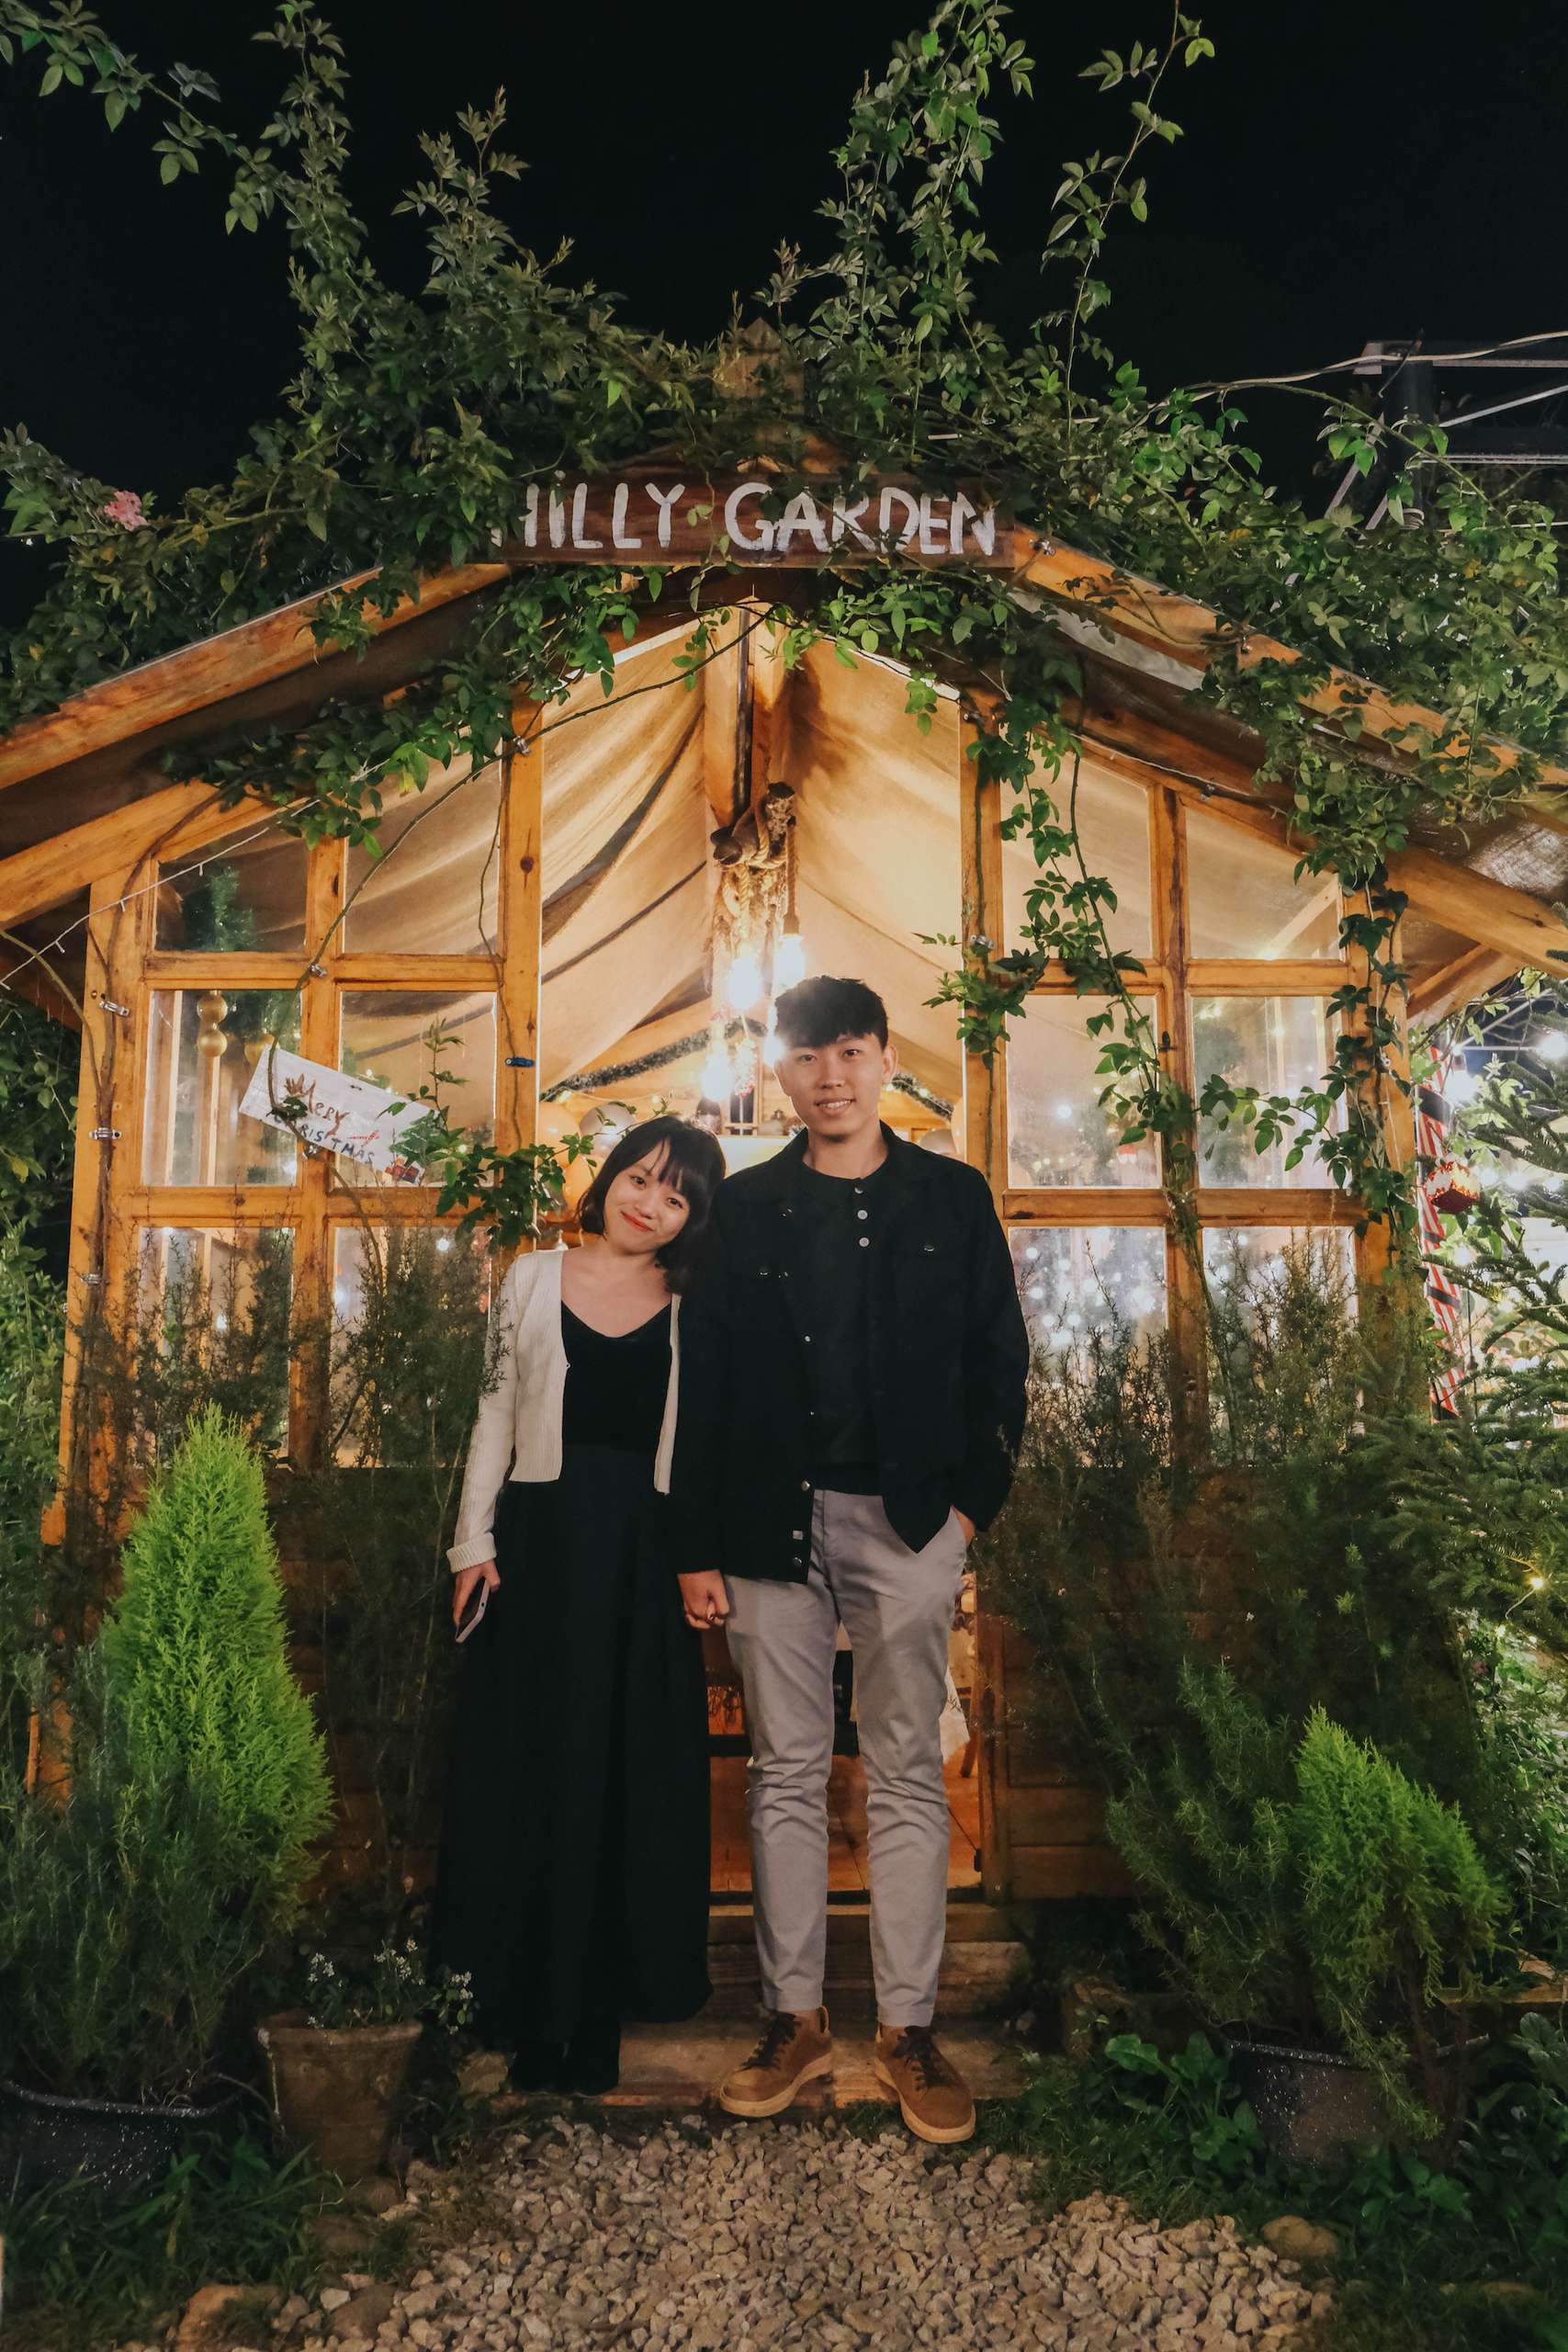 Hilly Garden